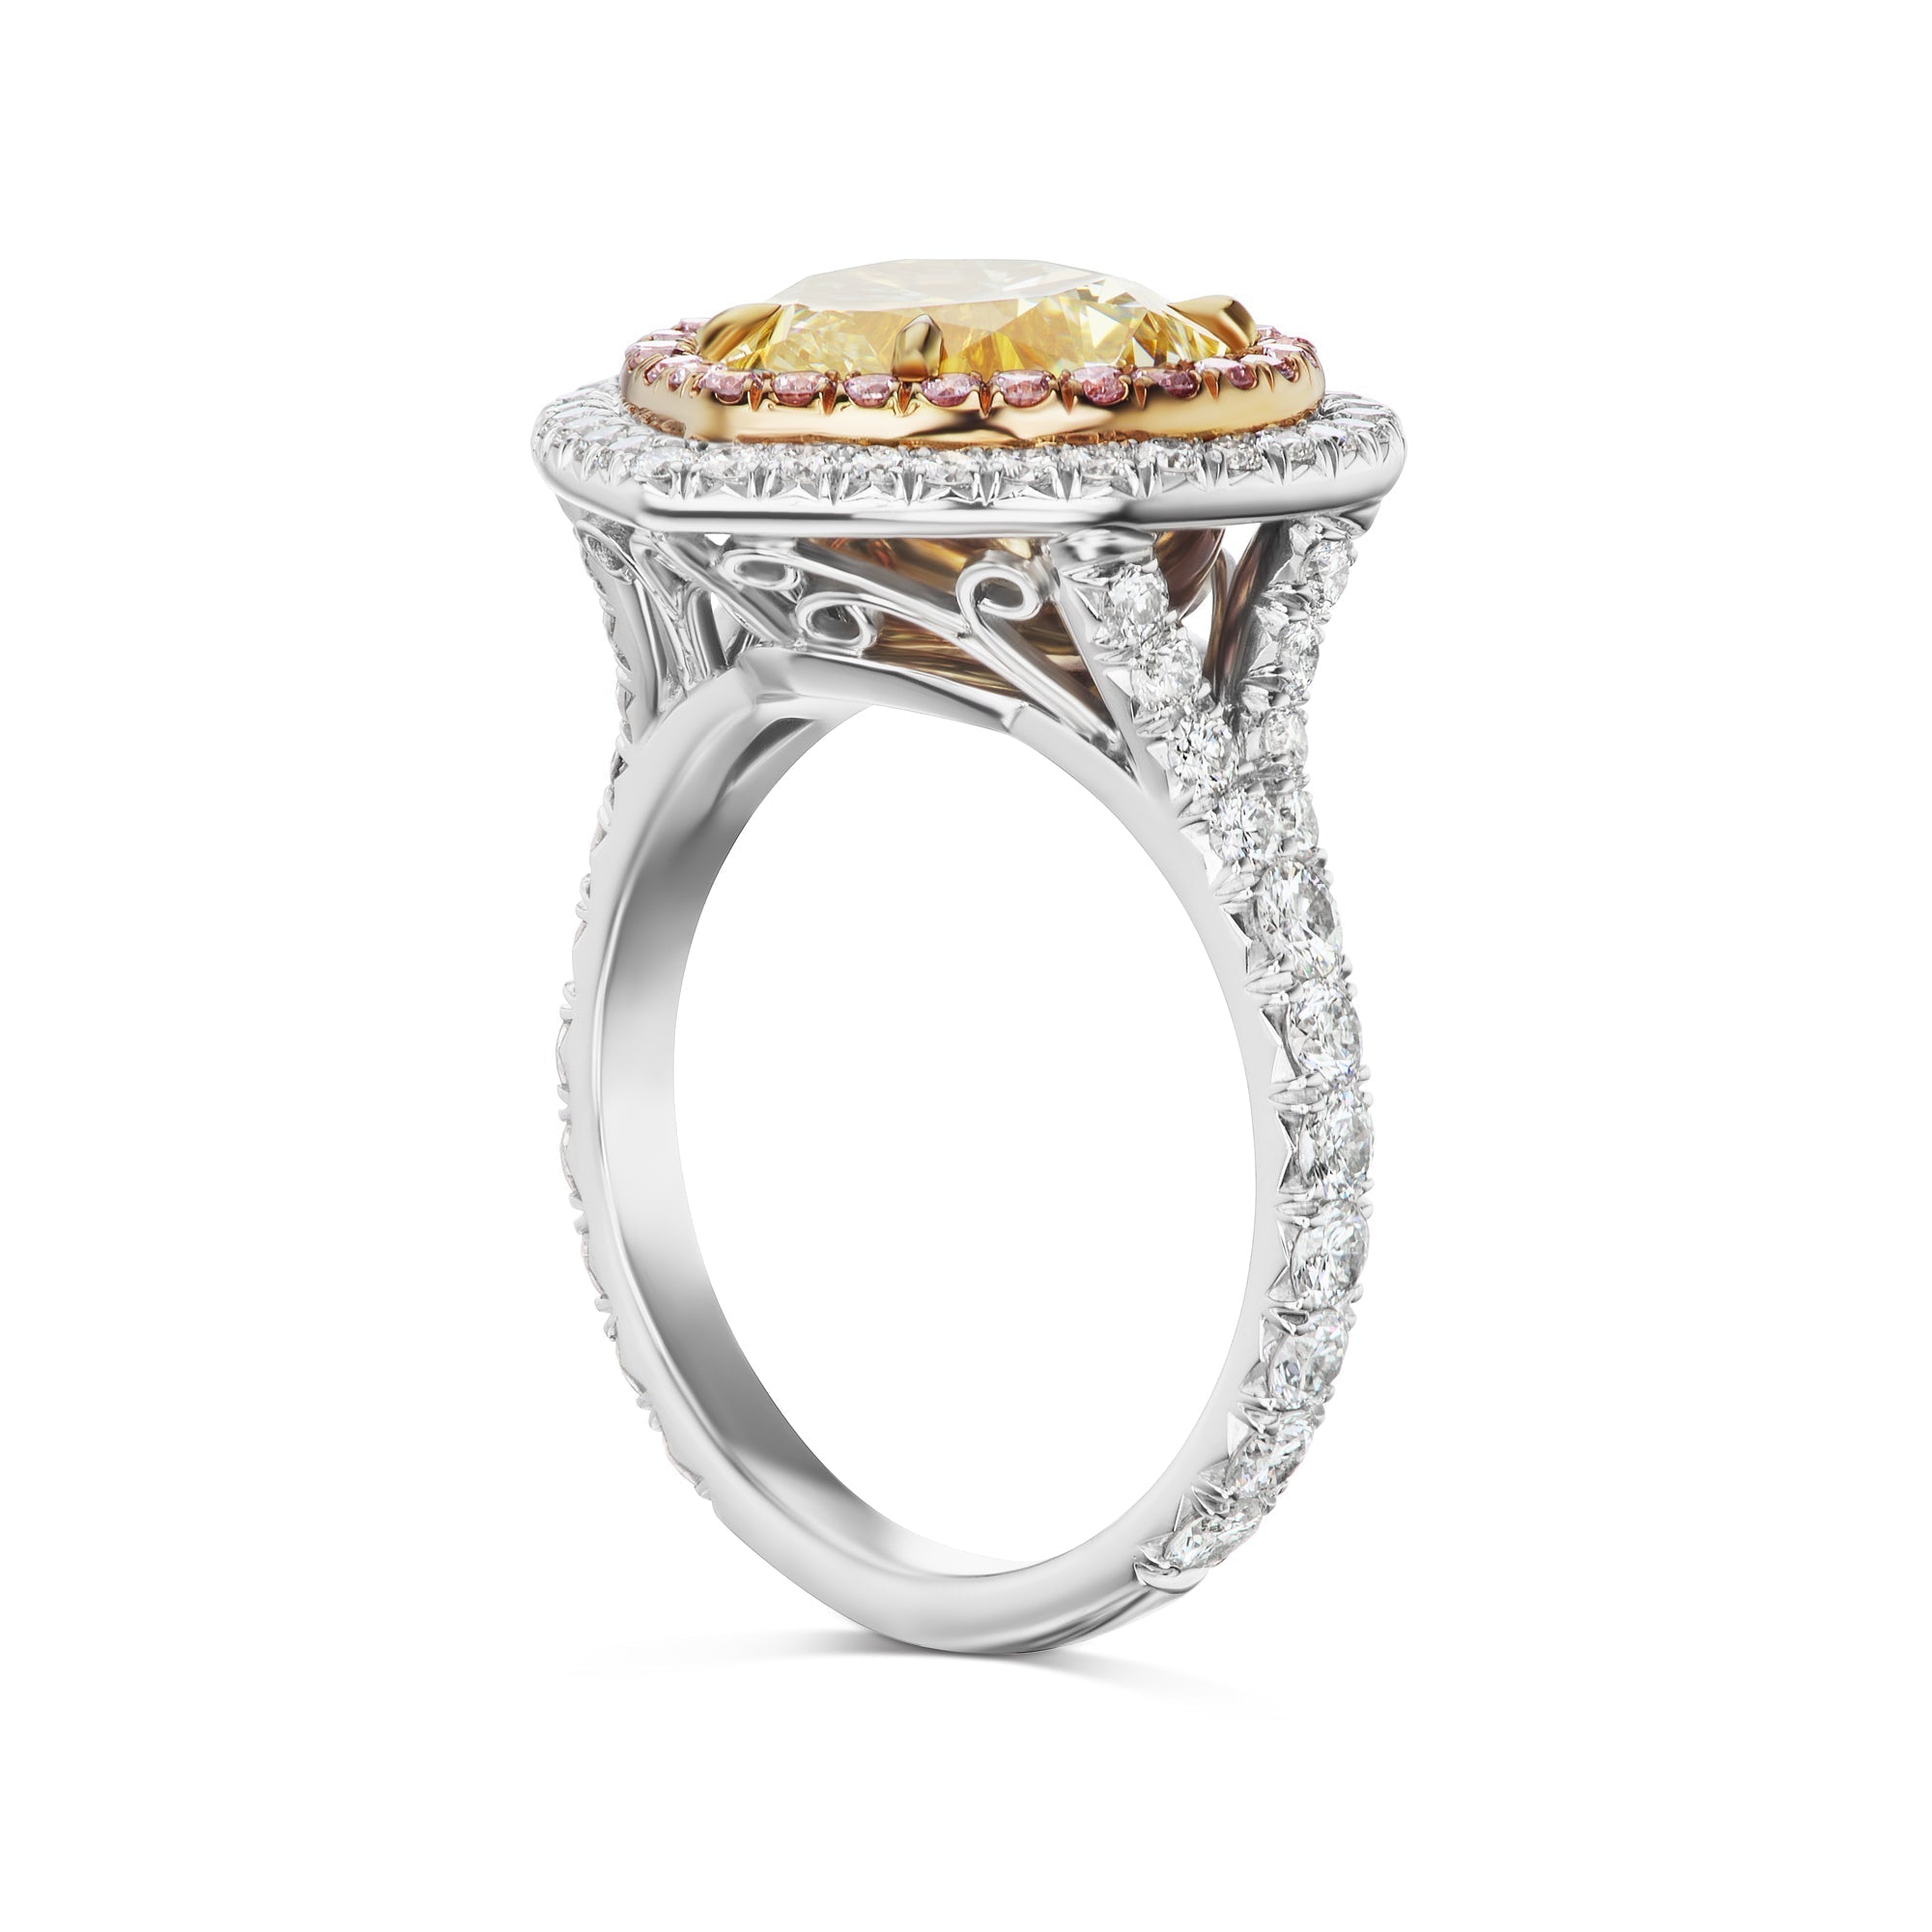 Buy Gleaming 4-leaf Clover Diamond Ring Online | ORRA